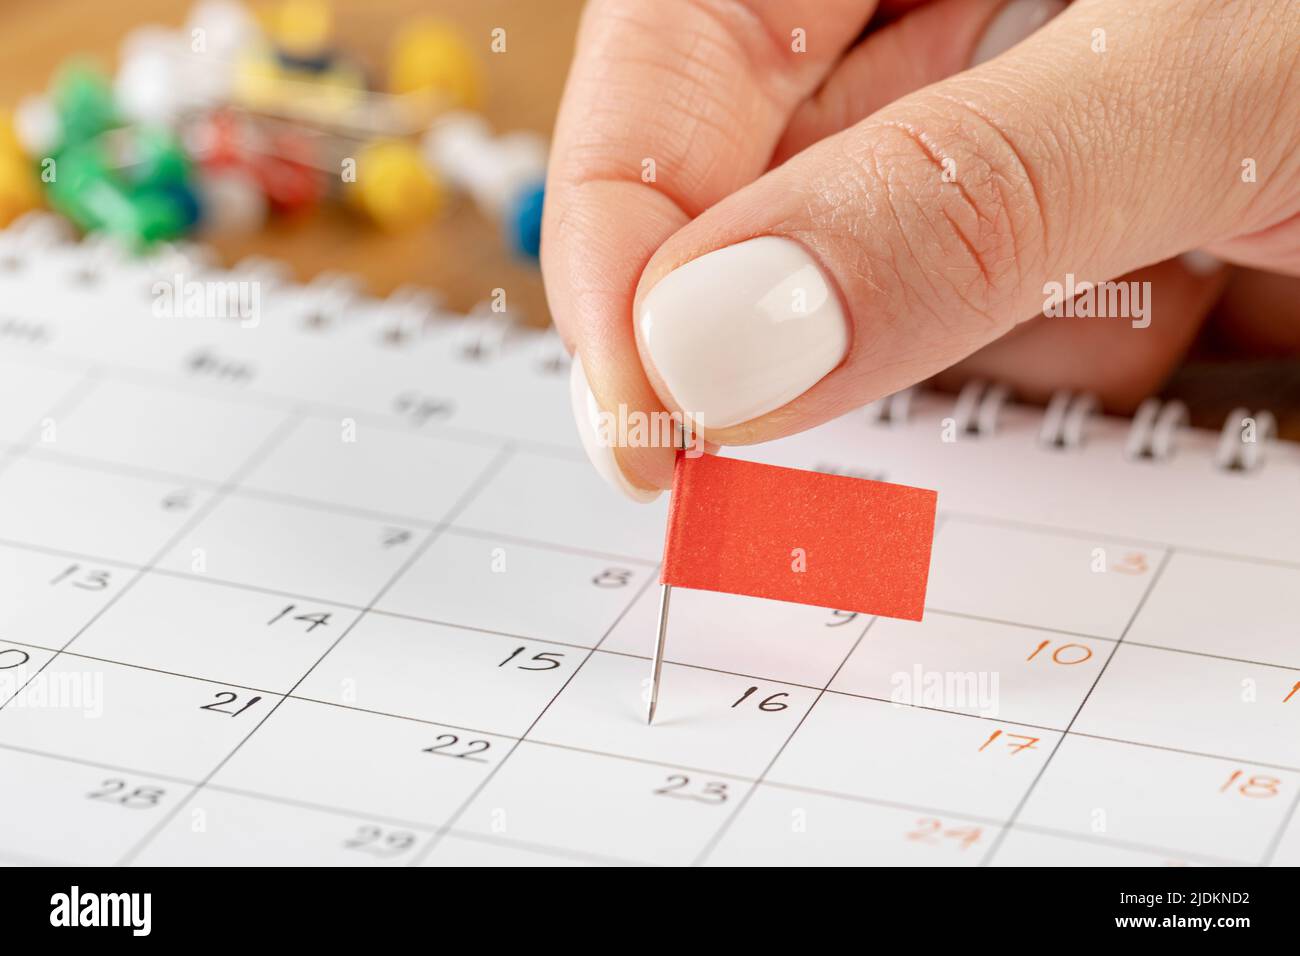 Programación de notas de fijación de manos, miniatura de pin de marca roja en el calendario para recordatorio de reunión y cita Foto de stock